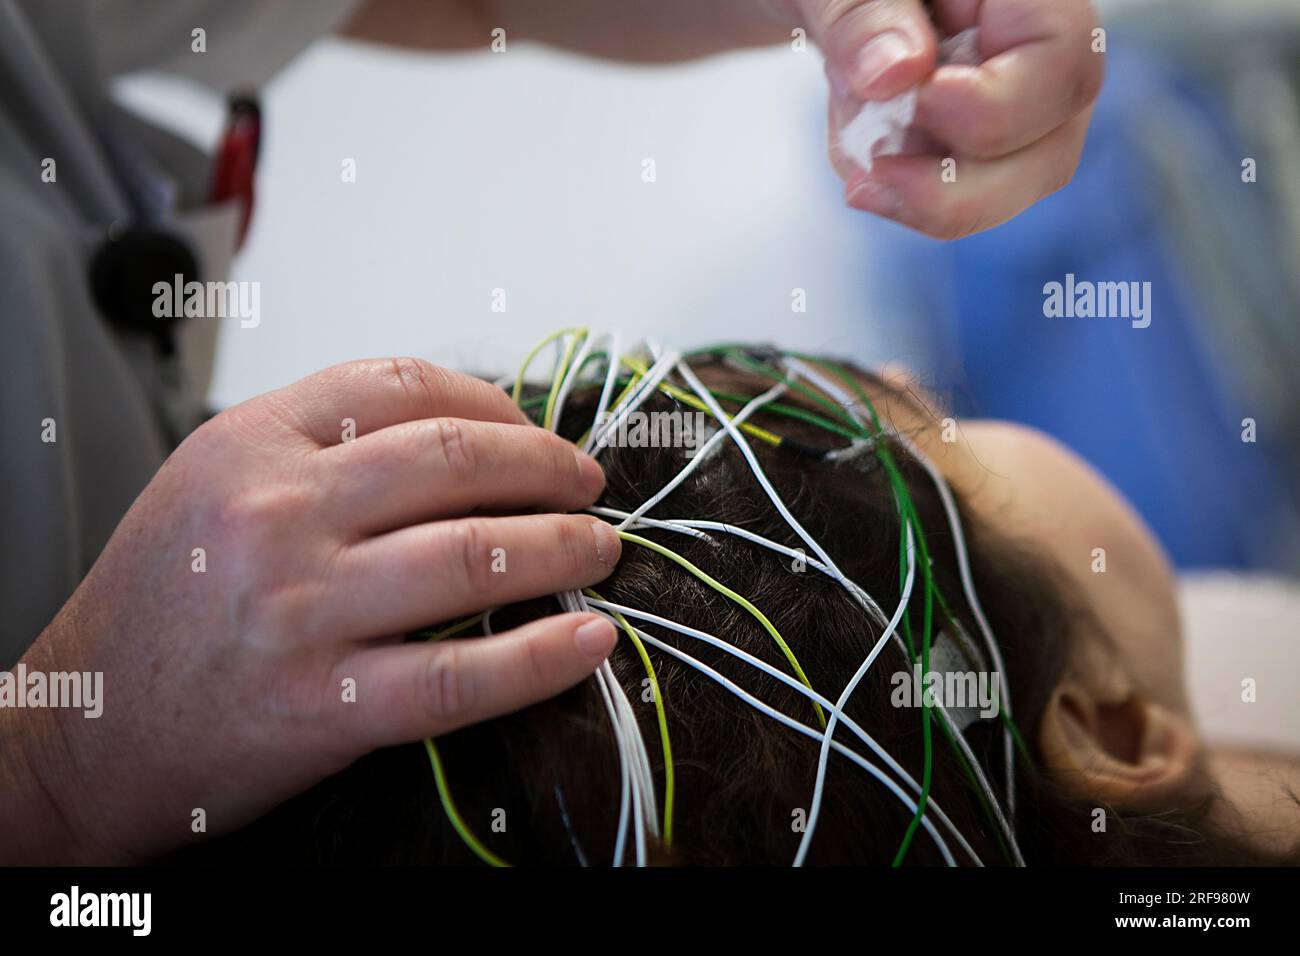 Neurologia: Screening e monitoraggio dell'epilessia, posizionamento degli elettrodi per EEG o elettroencefalogramma. Foto Stock